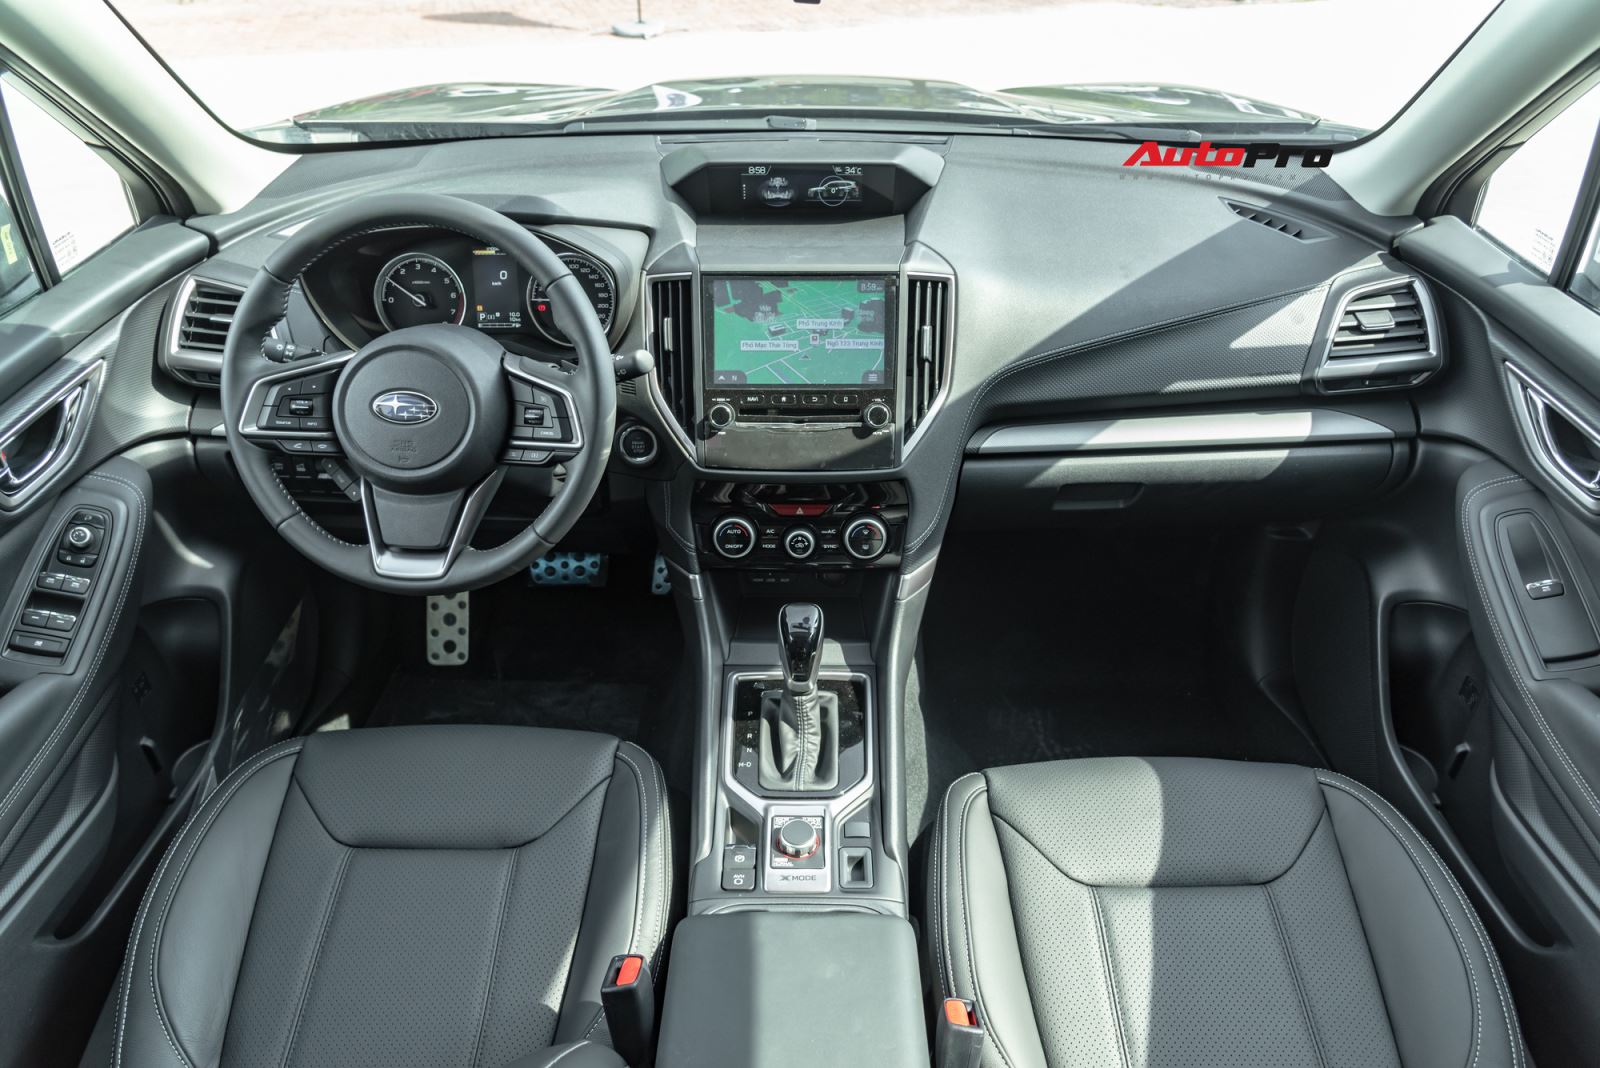 Đánh giá nhanh Subaru Forester 2019: Cơ hội trước Honda CR-V và Mazda CX-5? 1